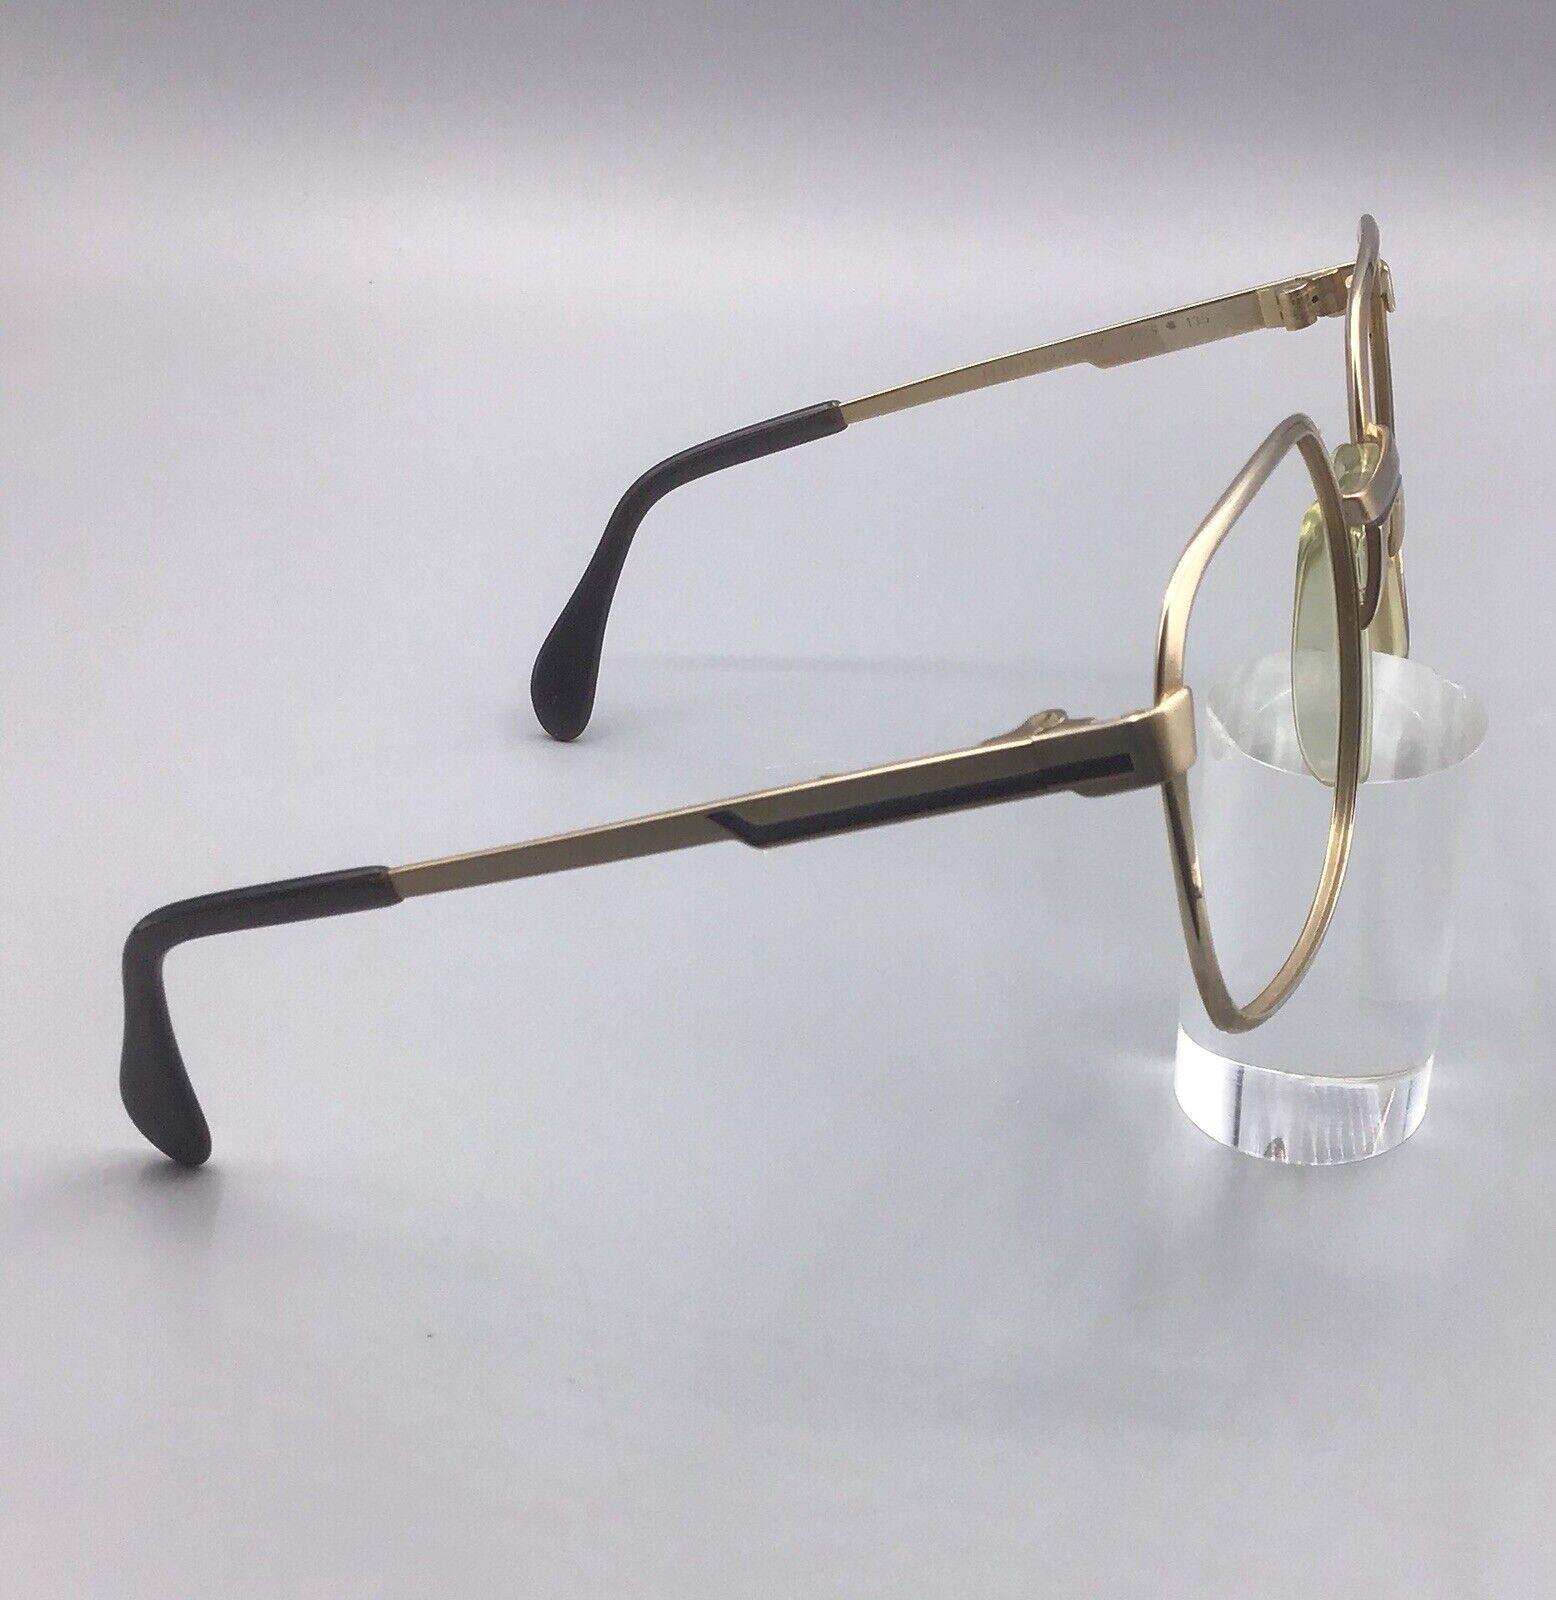 Metzler eyeglasses 7745 frame Germany occhiale vintage brillen Gold laminated